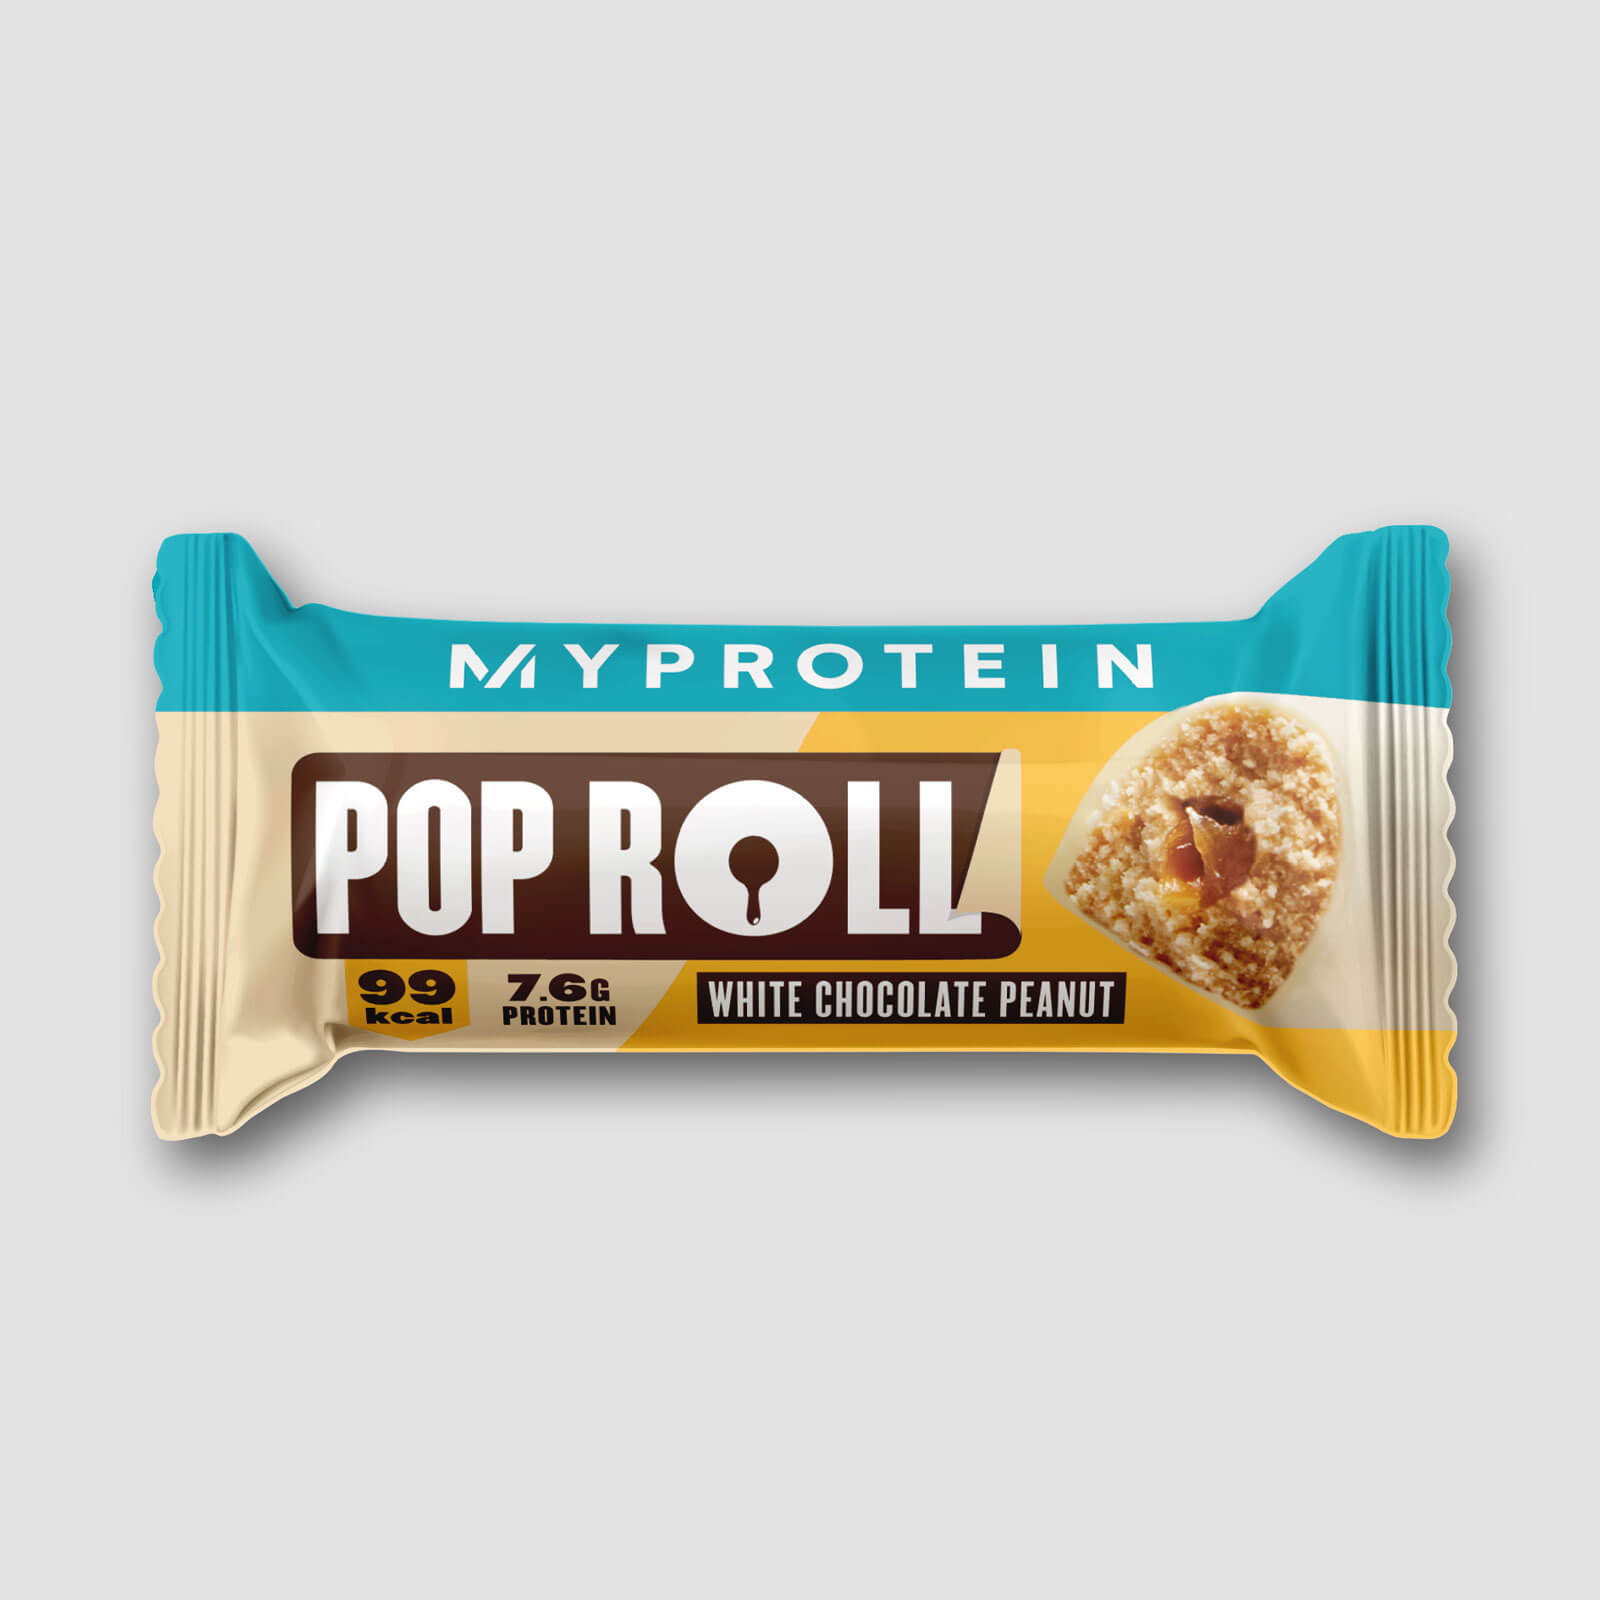 Myprotein Pop Rolls (Sample) - 30g - White Choc Peanut